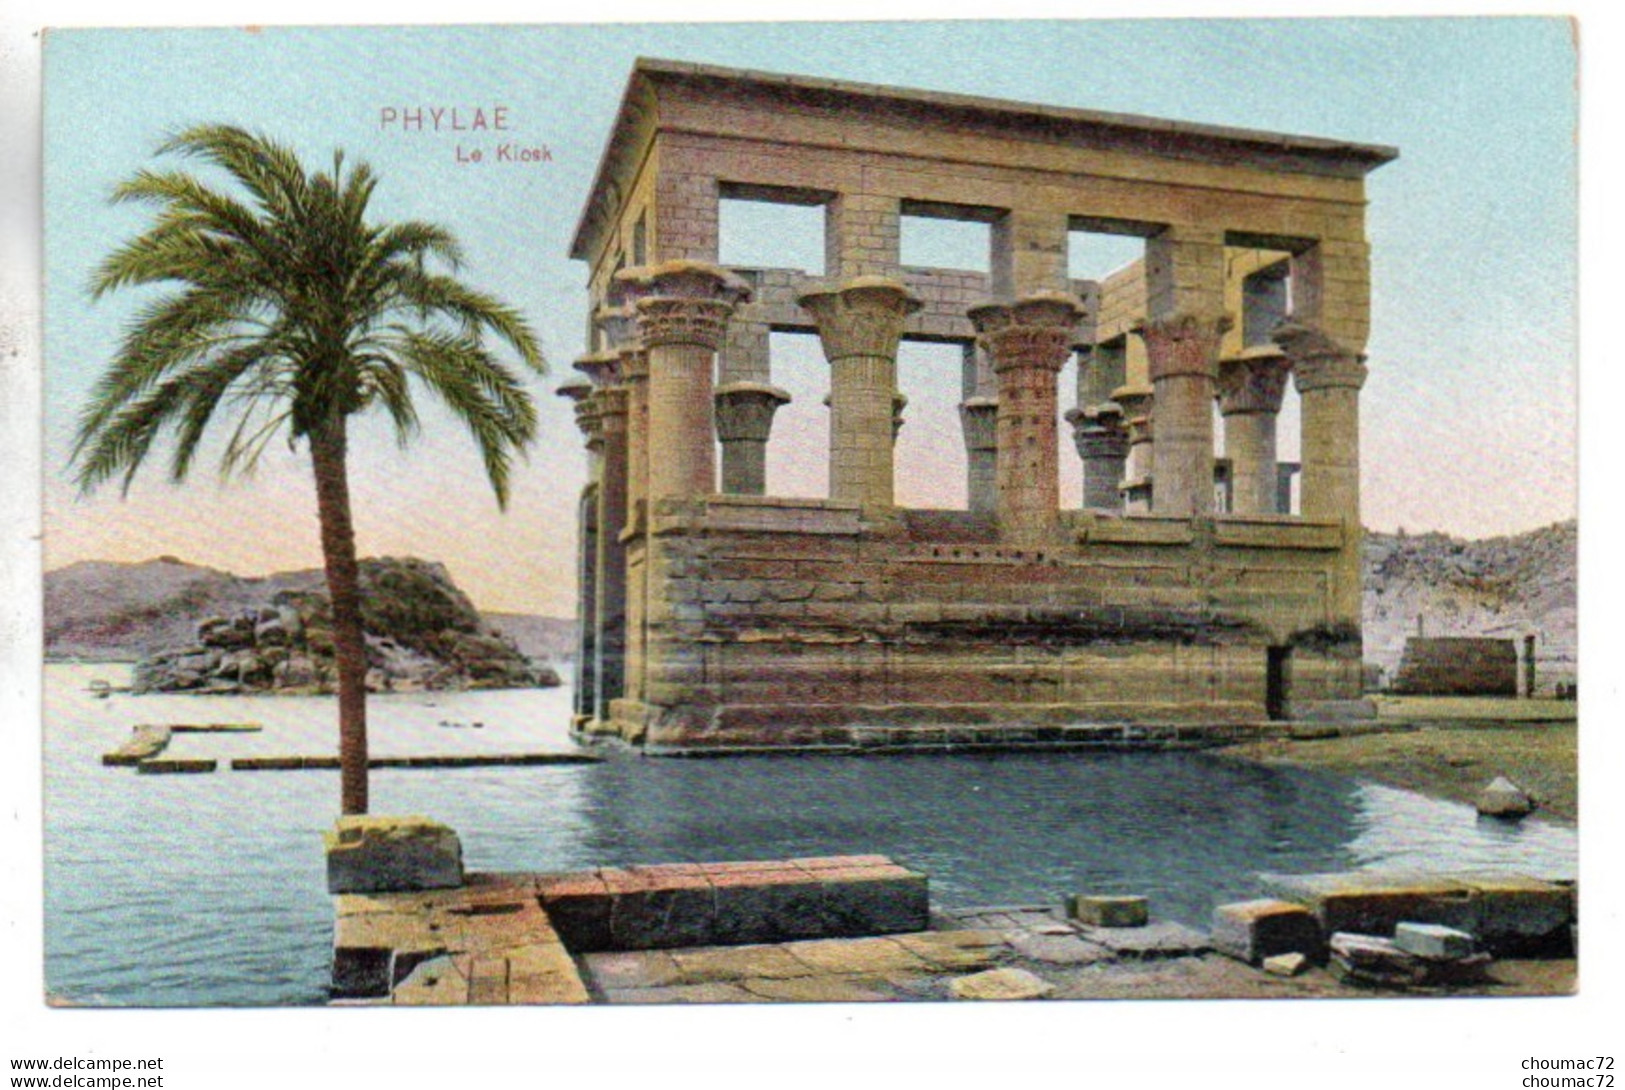 (Egypte) 294, Phylae, Le Kiosk - Assuan